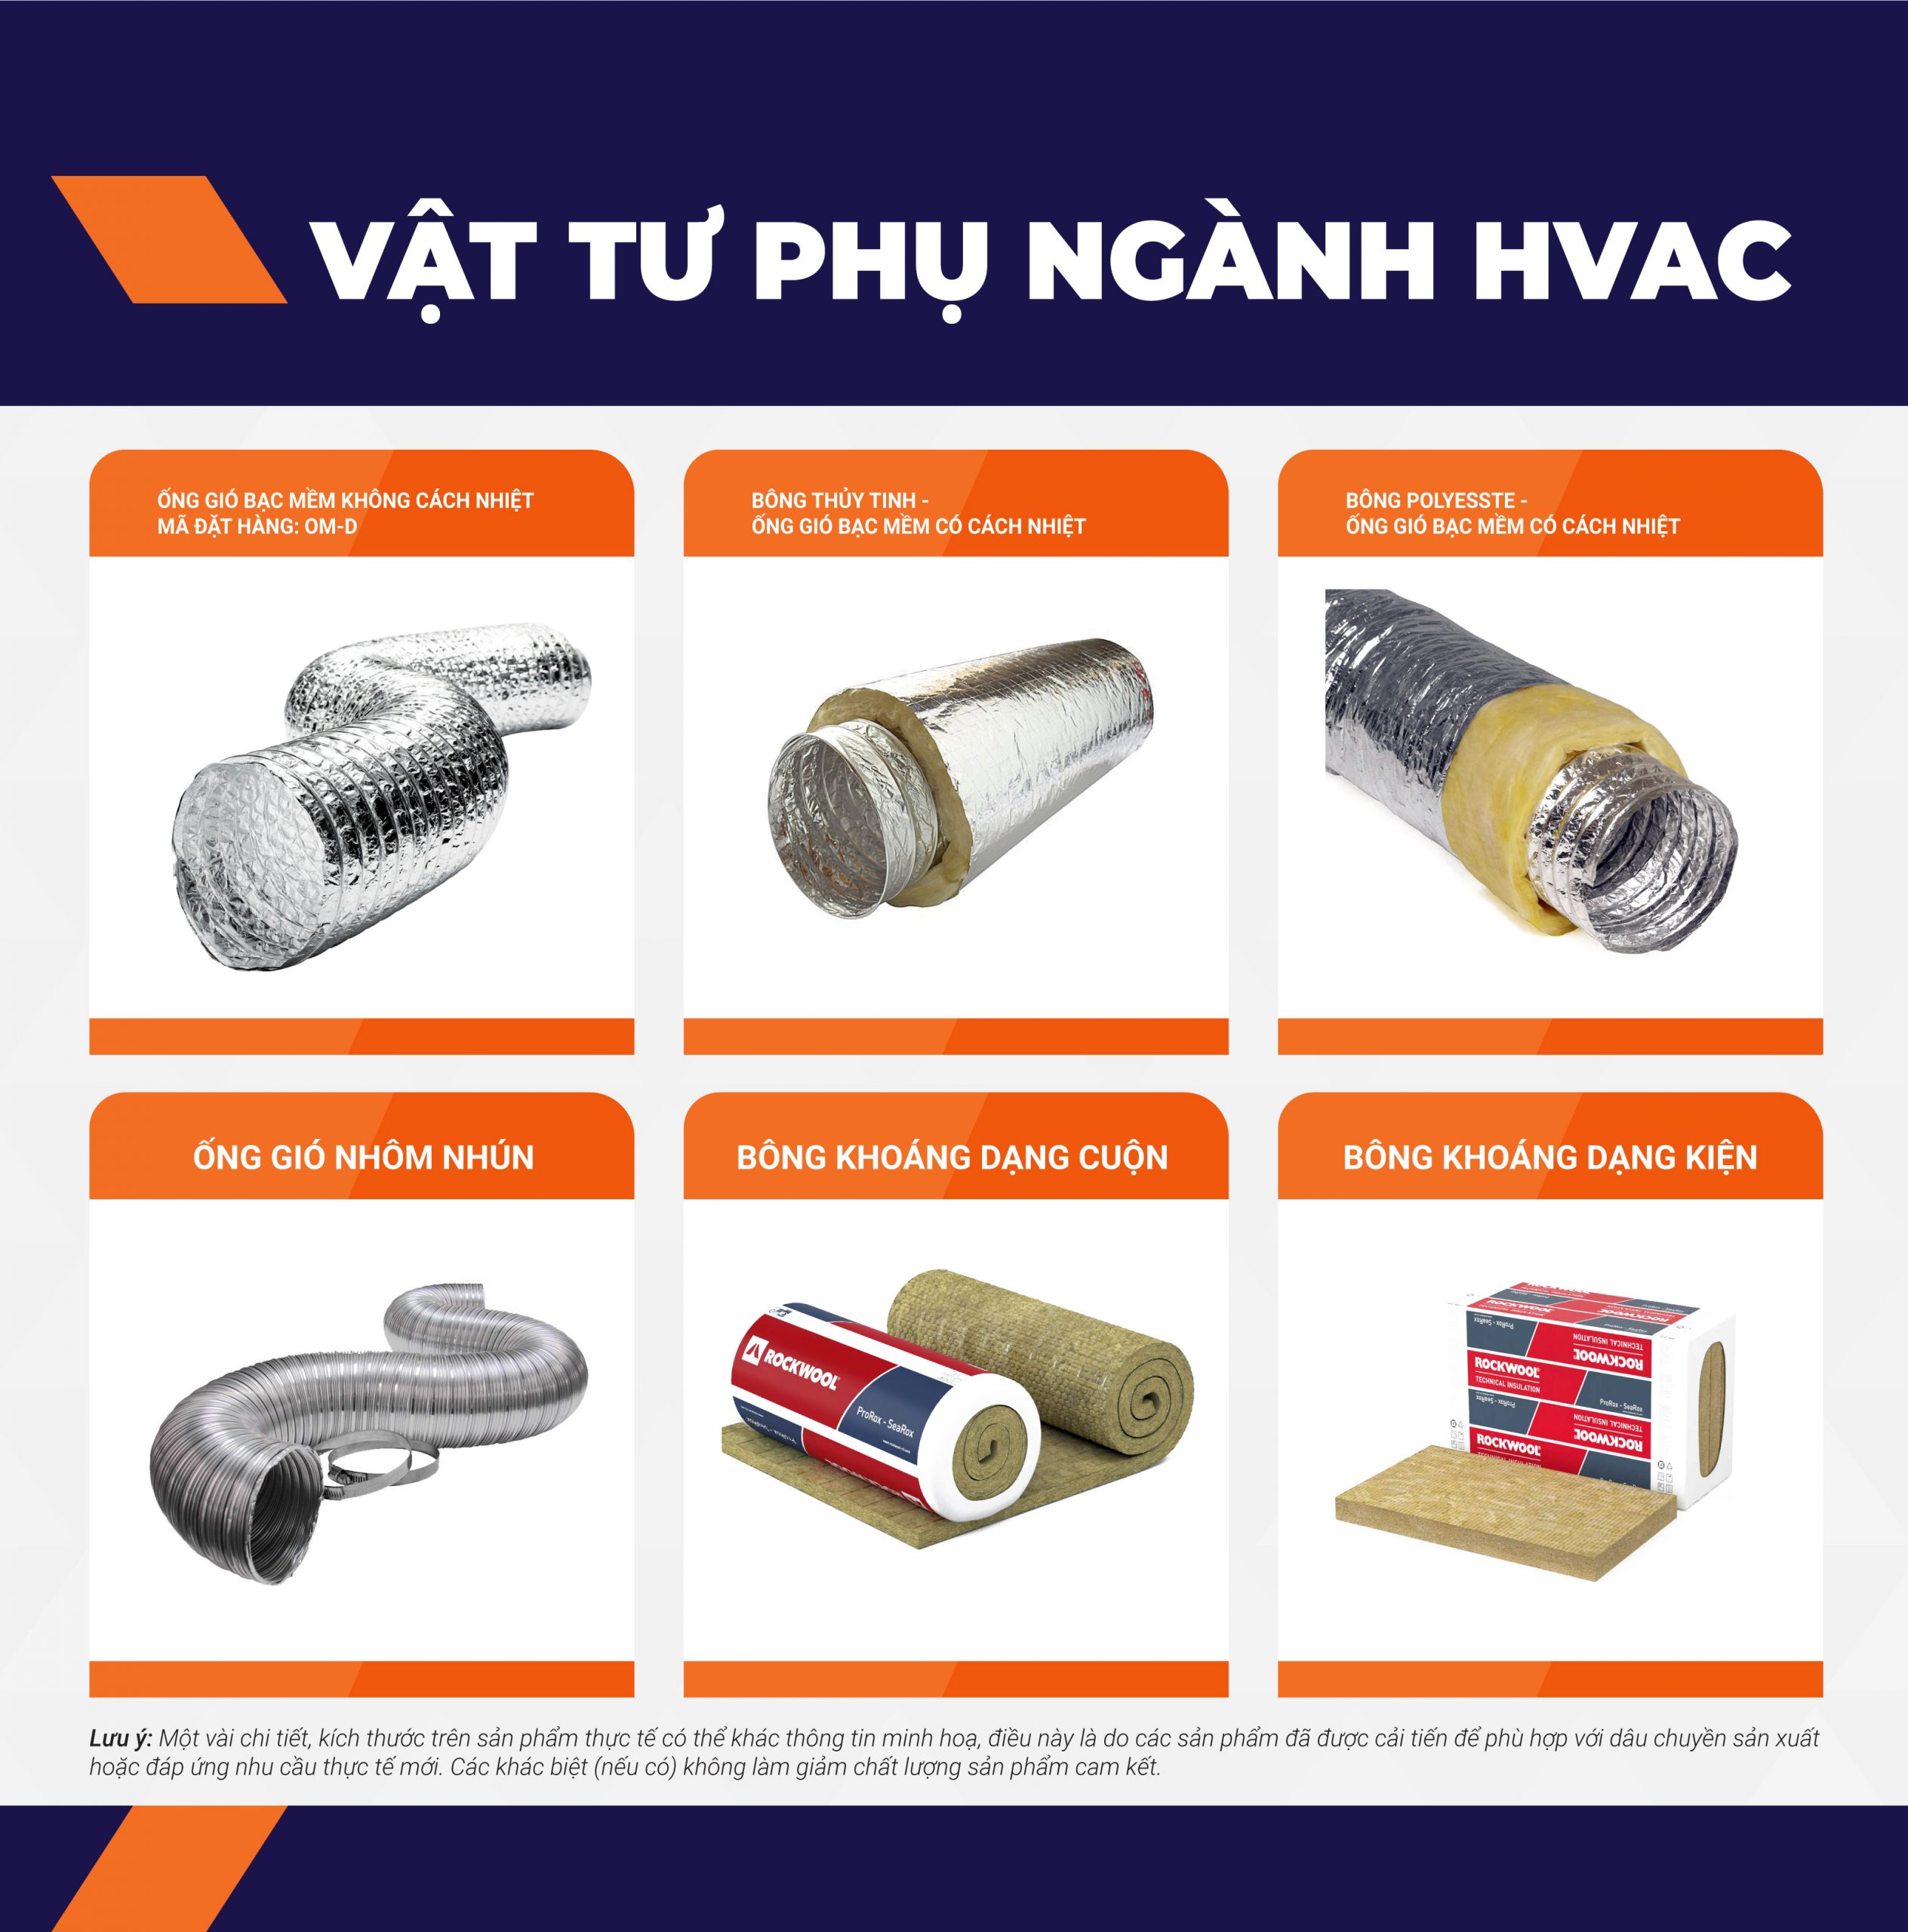 Vật tư phụ - Ngành HVAC - Bách Khoa Việt Nam